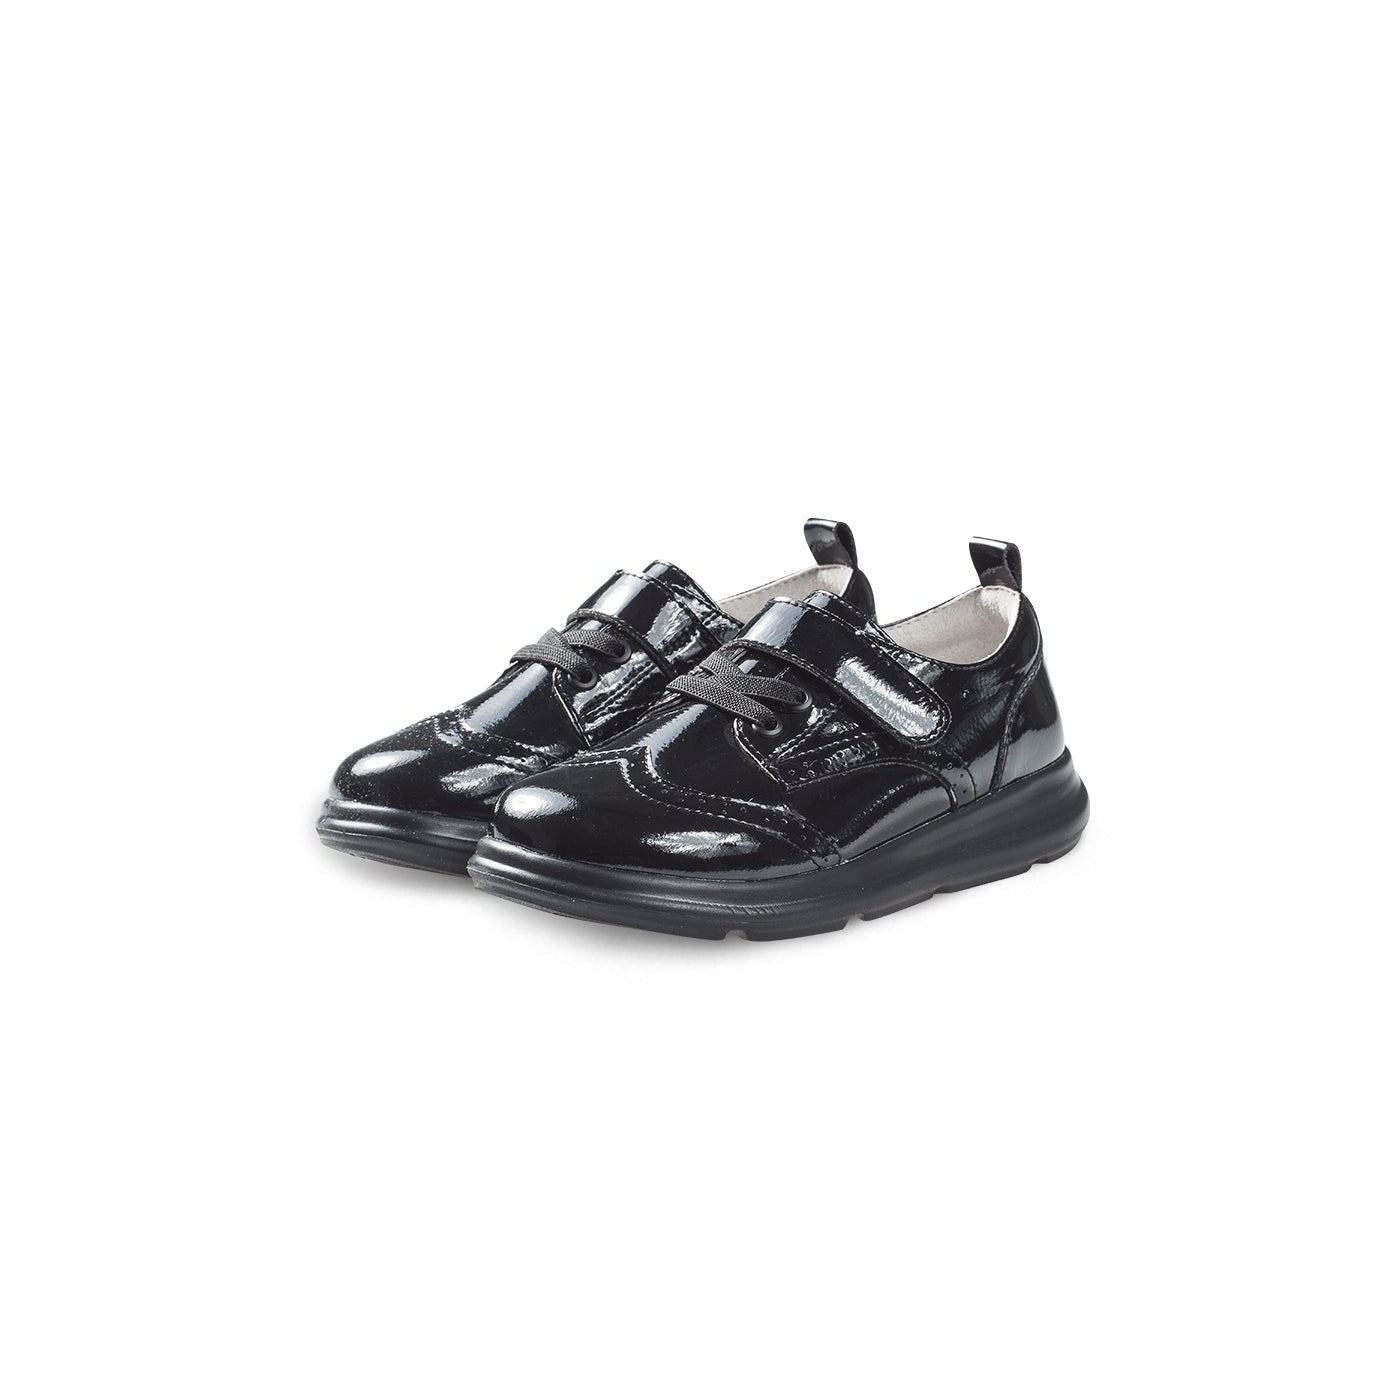 Posh Time Soft Sole Kids Patent Black Brogue School Shoes - 0cm